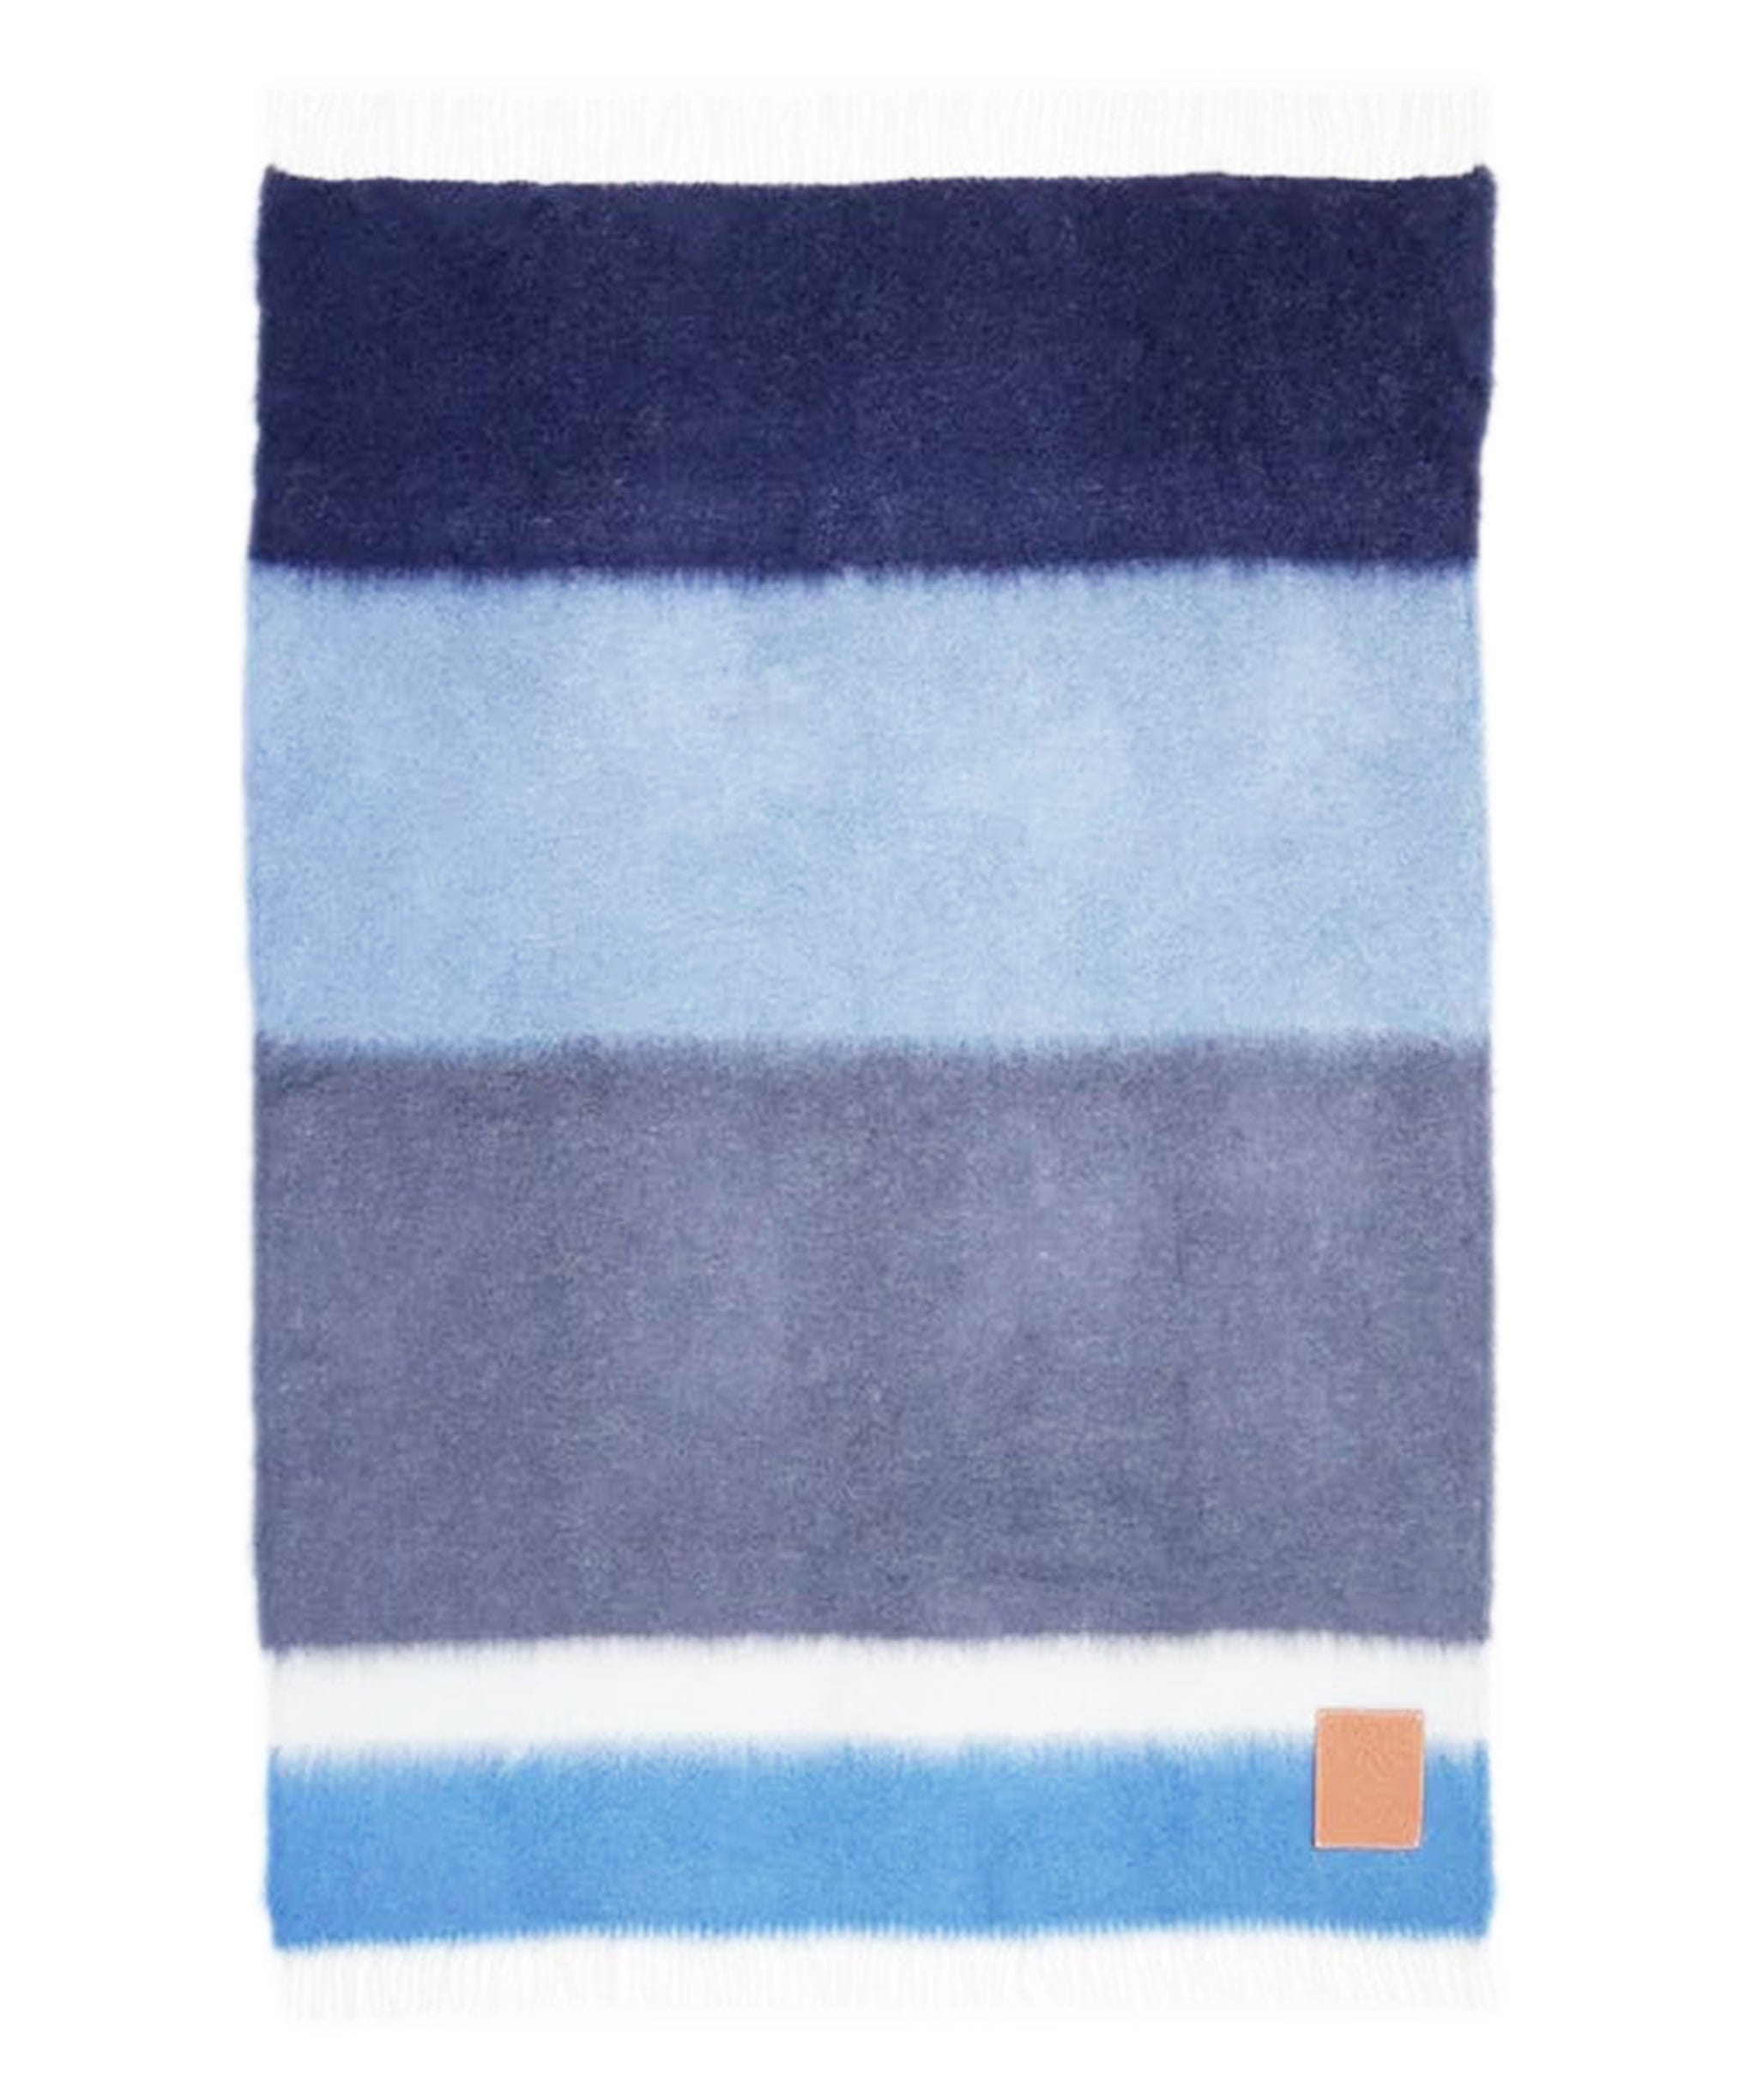 Loewe Loewe Checkerboard Anagram Jacquard Wool Blend Blanket